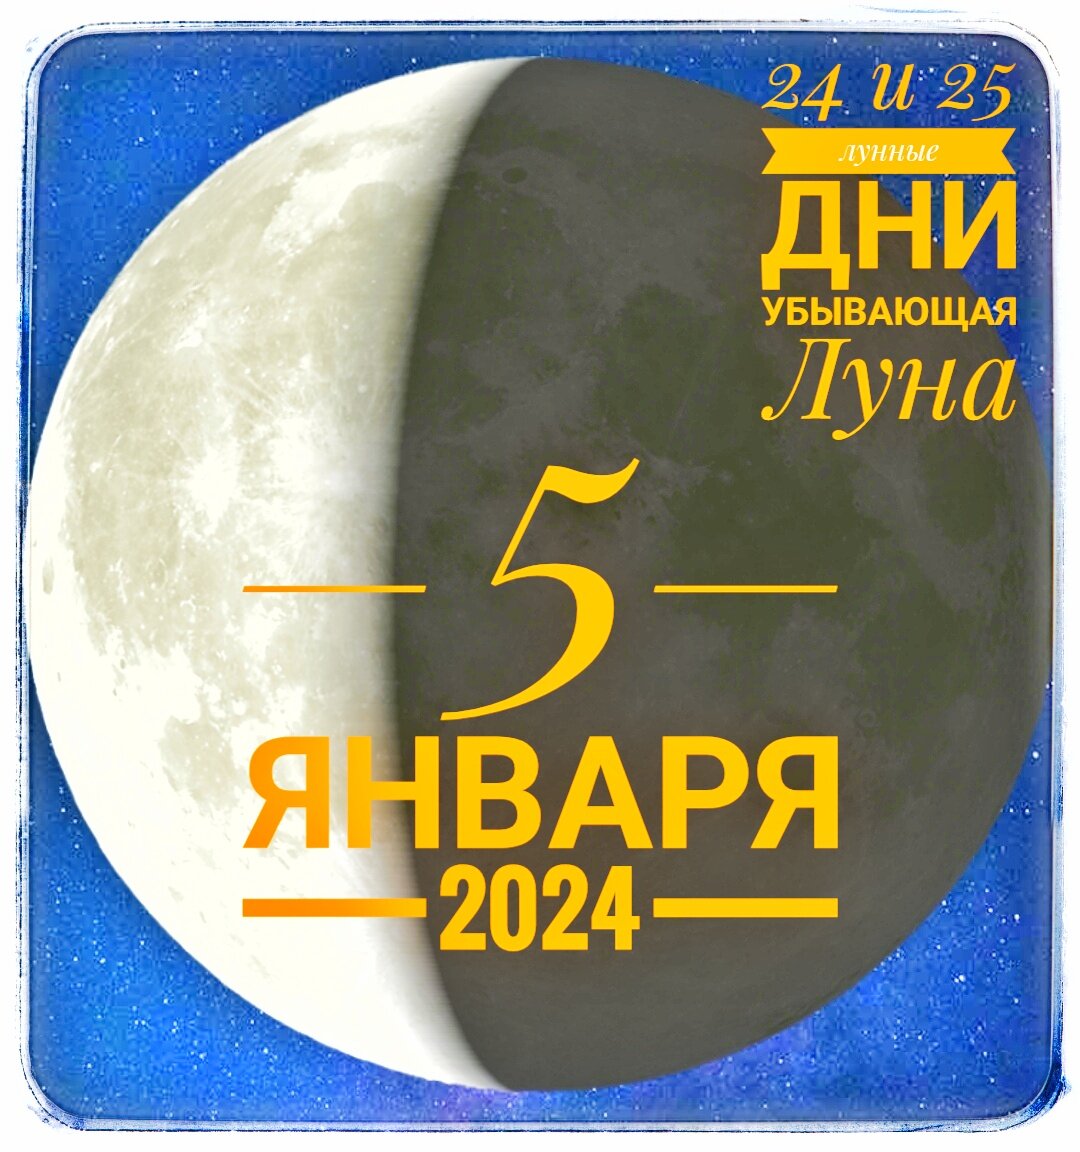 Полная луна в 2024 году